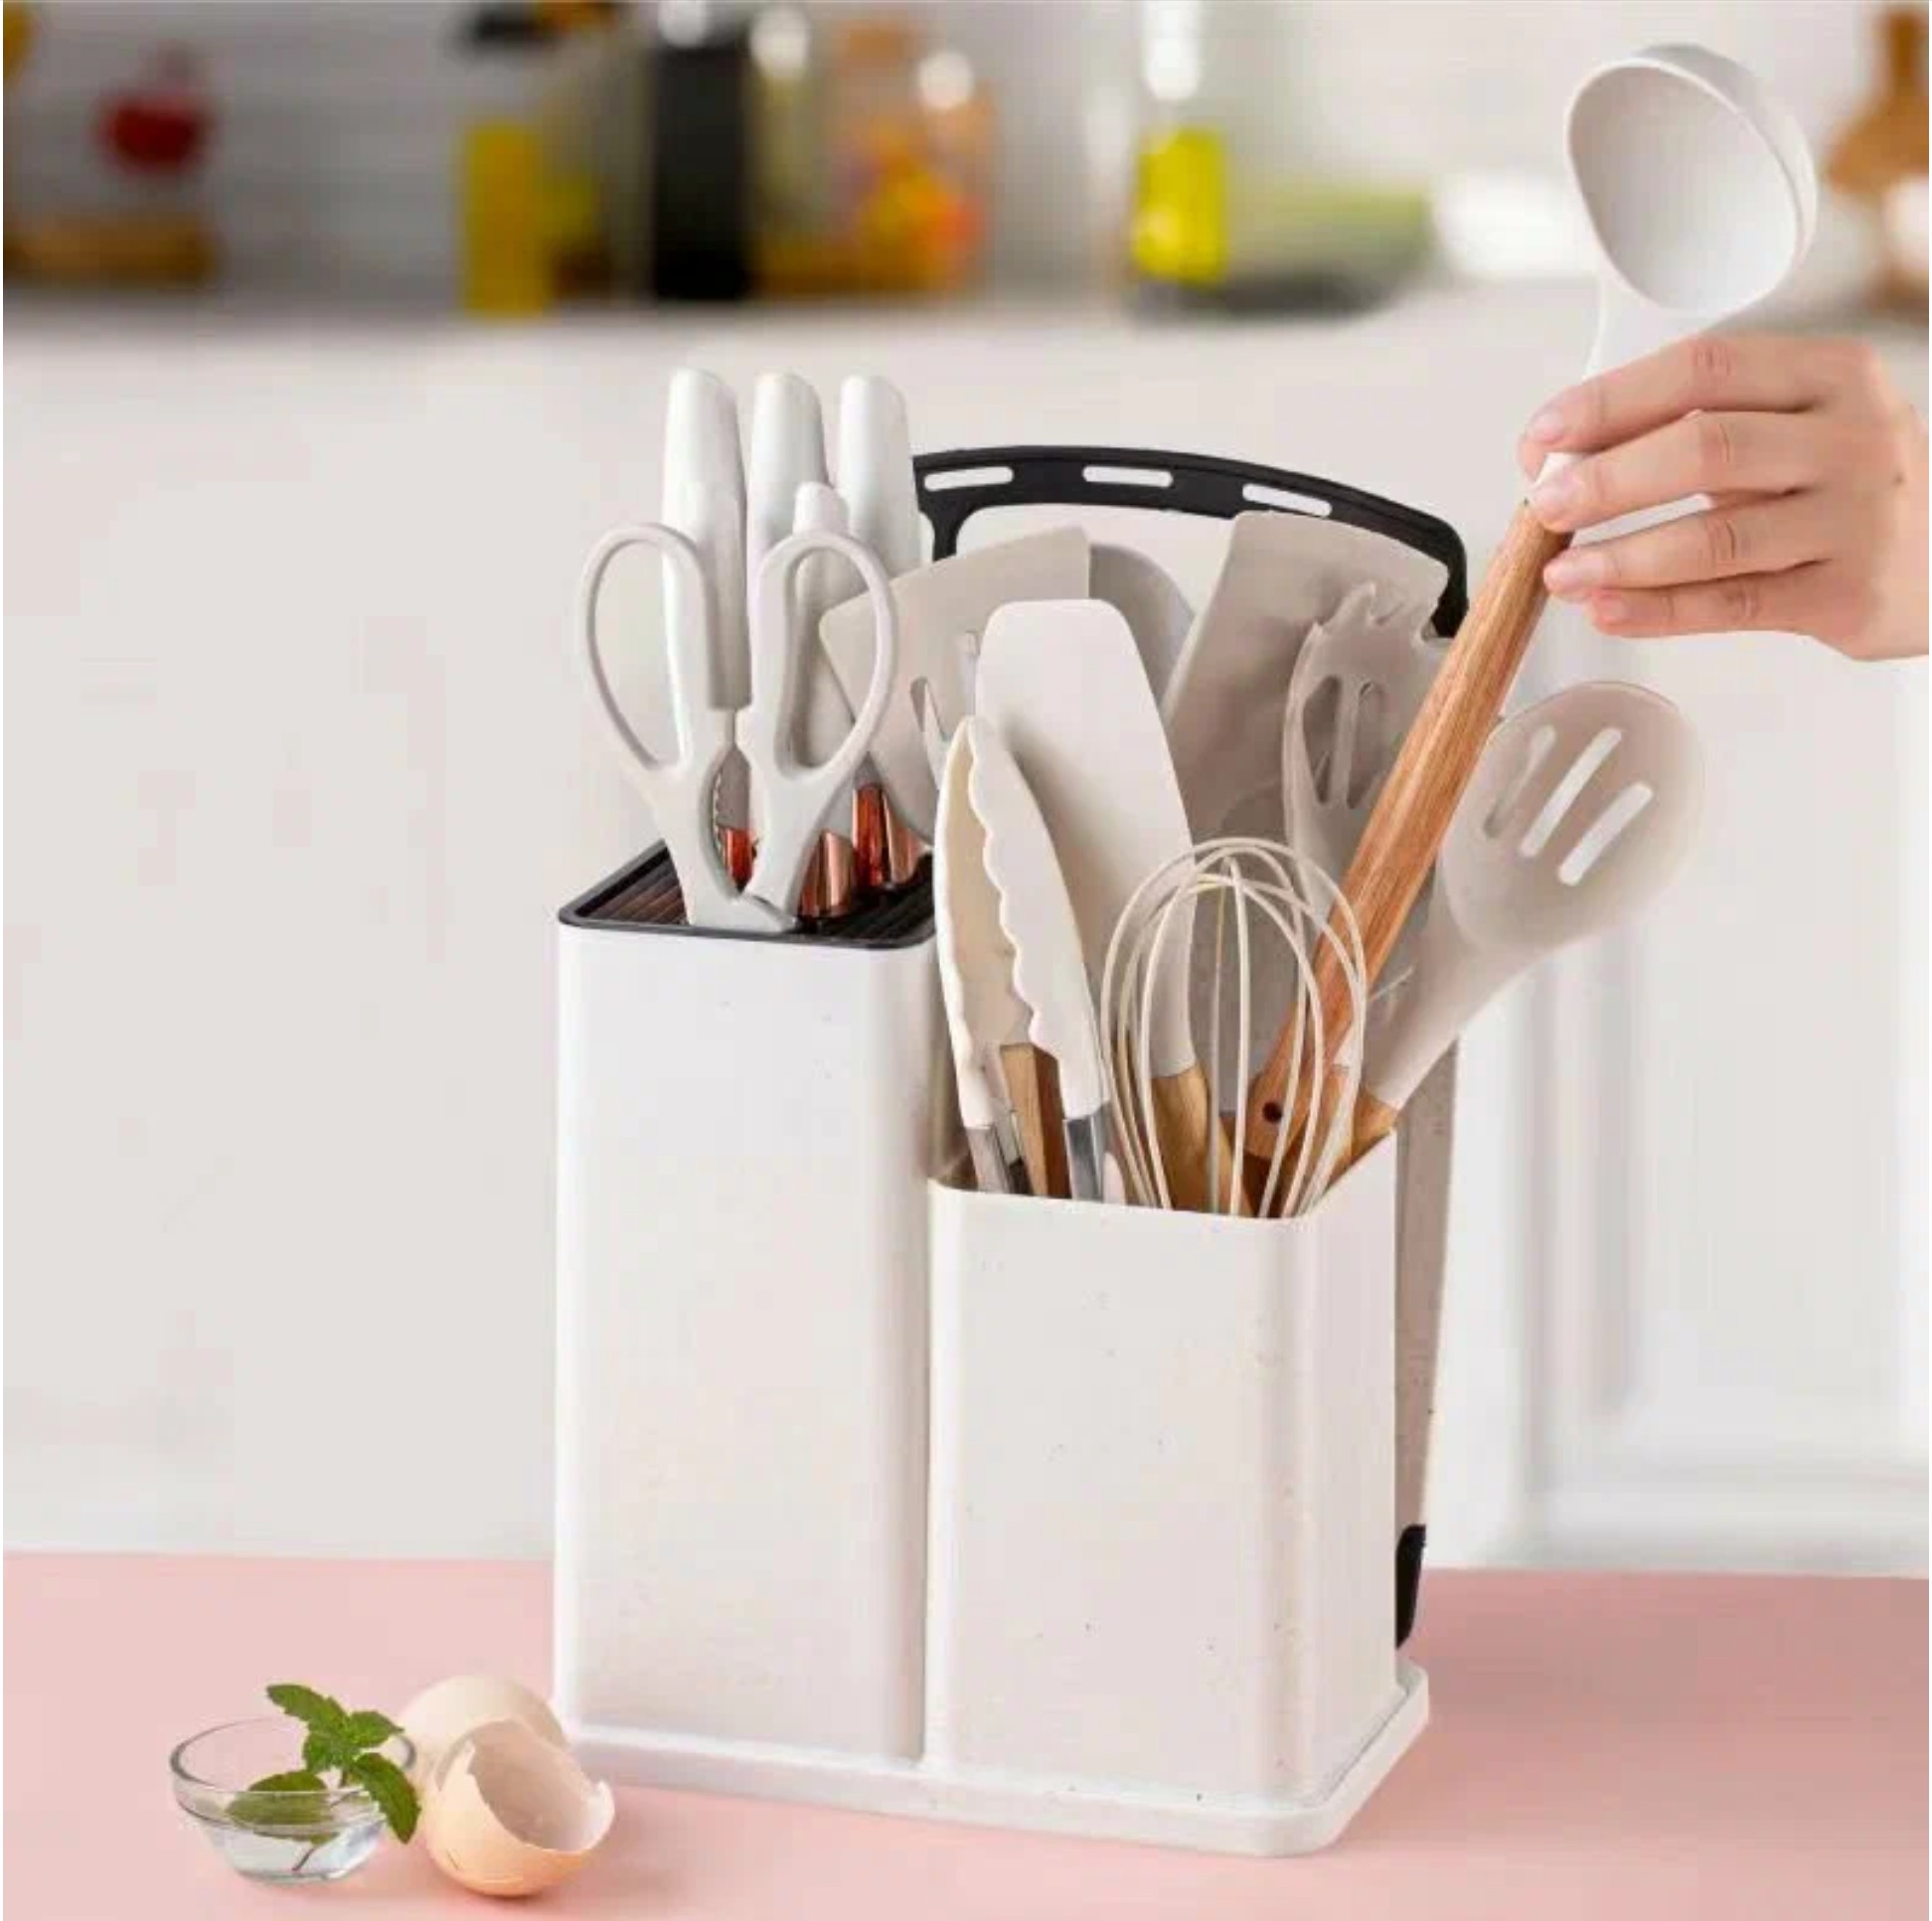 Набор кухонных предметов/ кухонный набор/кухонные принадлежности/ кухонная навестка комплект для кухни/18 предметов